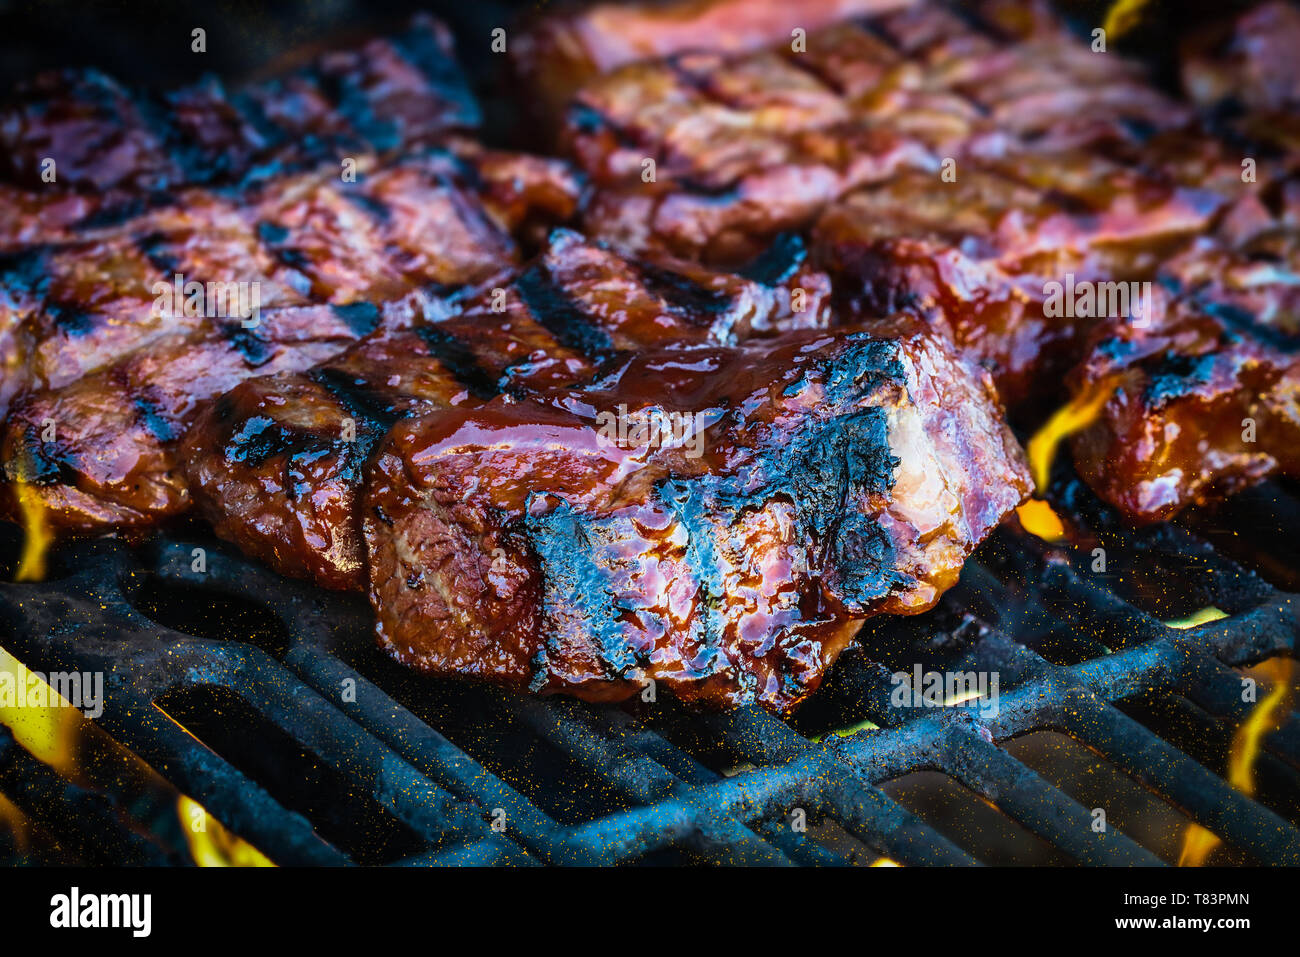 Carni bovine disossate nervature grigliare su fiamme con aggiunta di salsa barbecue. Estrema profondità di campo con sfondo sfocato con focus sulla parte anteriore della carne. Foto Stock